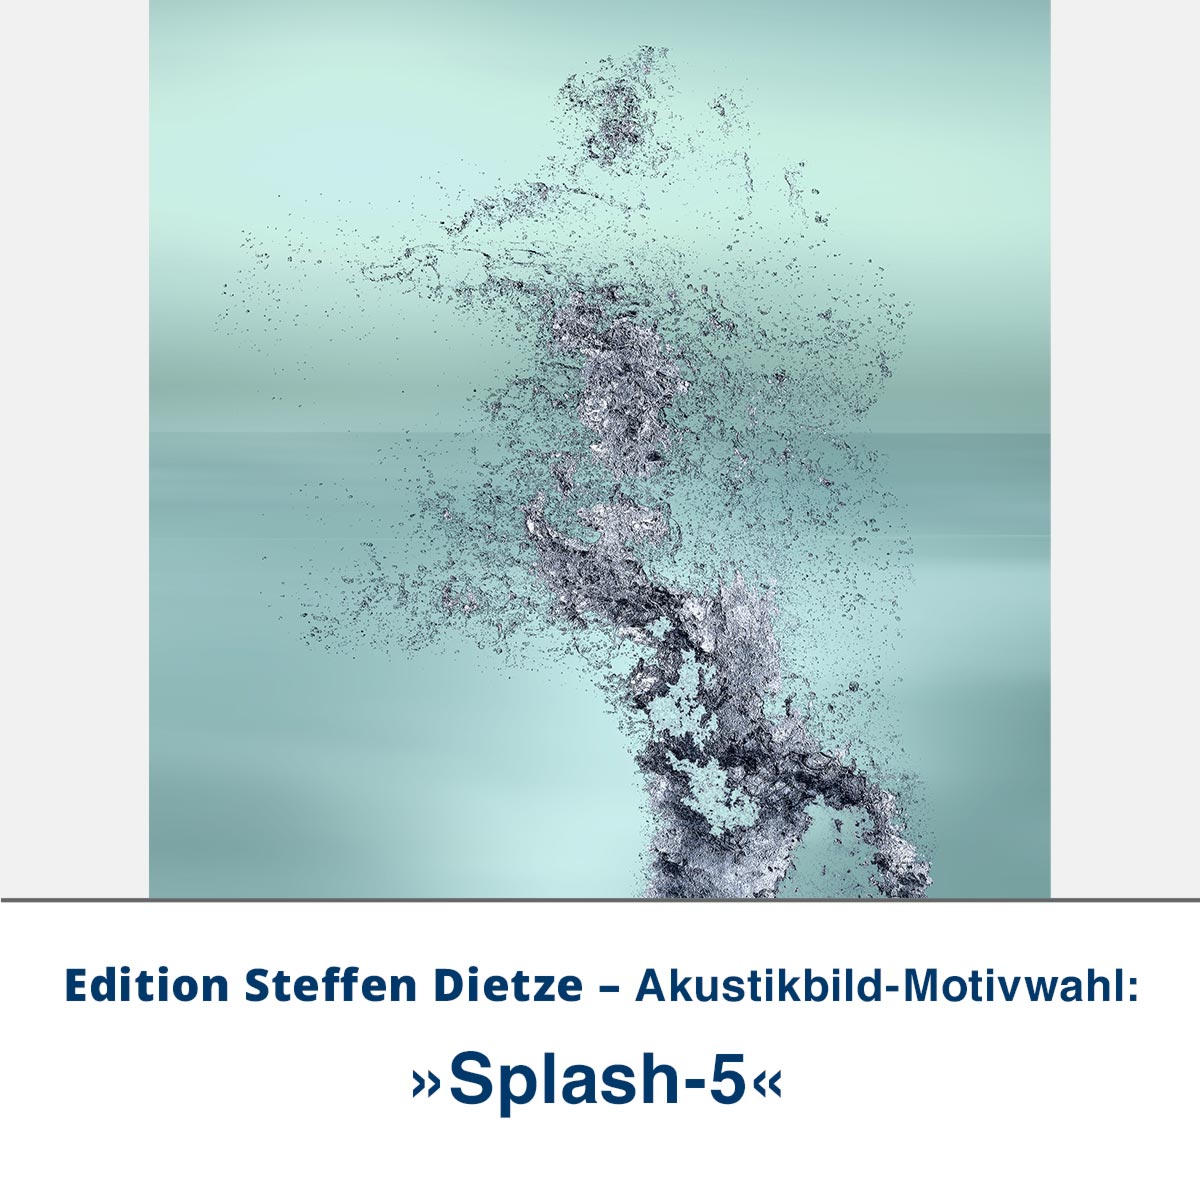 Akustikbild »Splash 5«, Edition Steffen Dietze